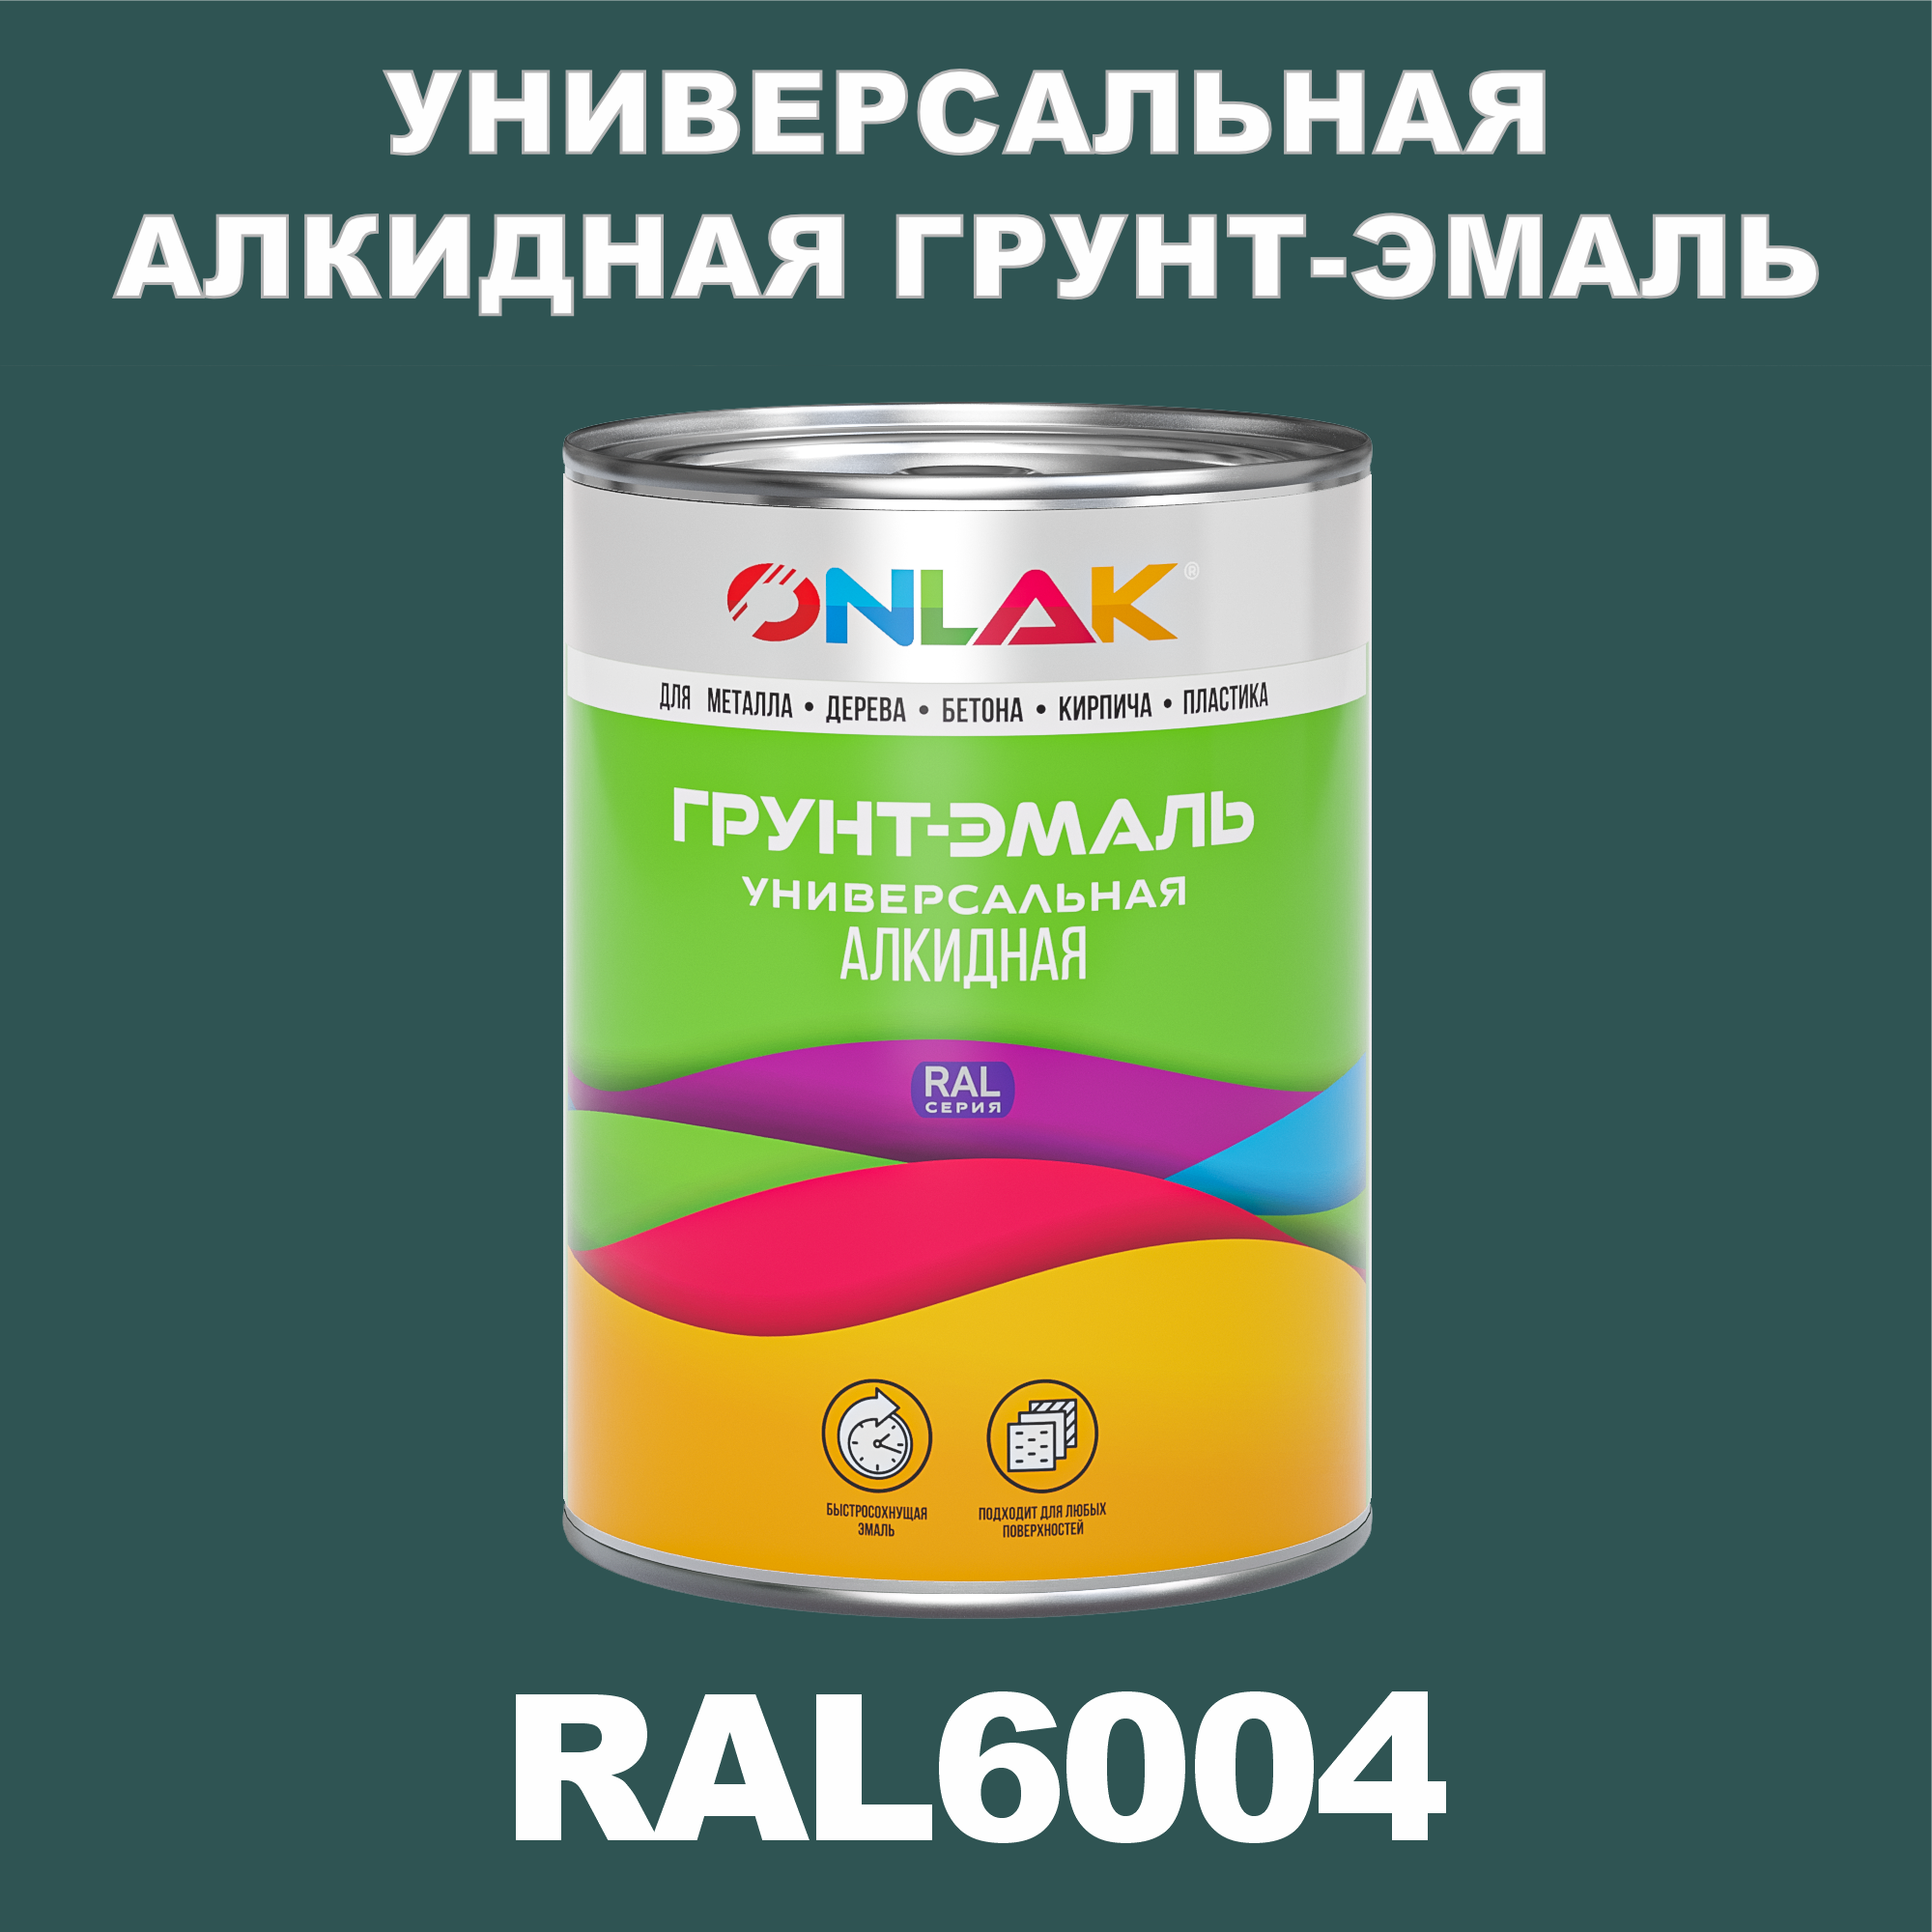 Грунт-эмаль ONLAK 1К RAL6004 антикоррозионная алкидная по металлу по ржавчине 1 кг